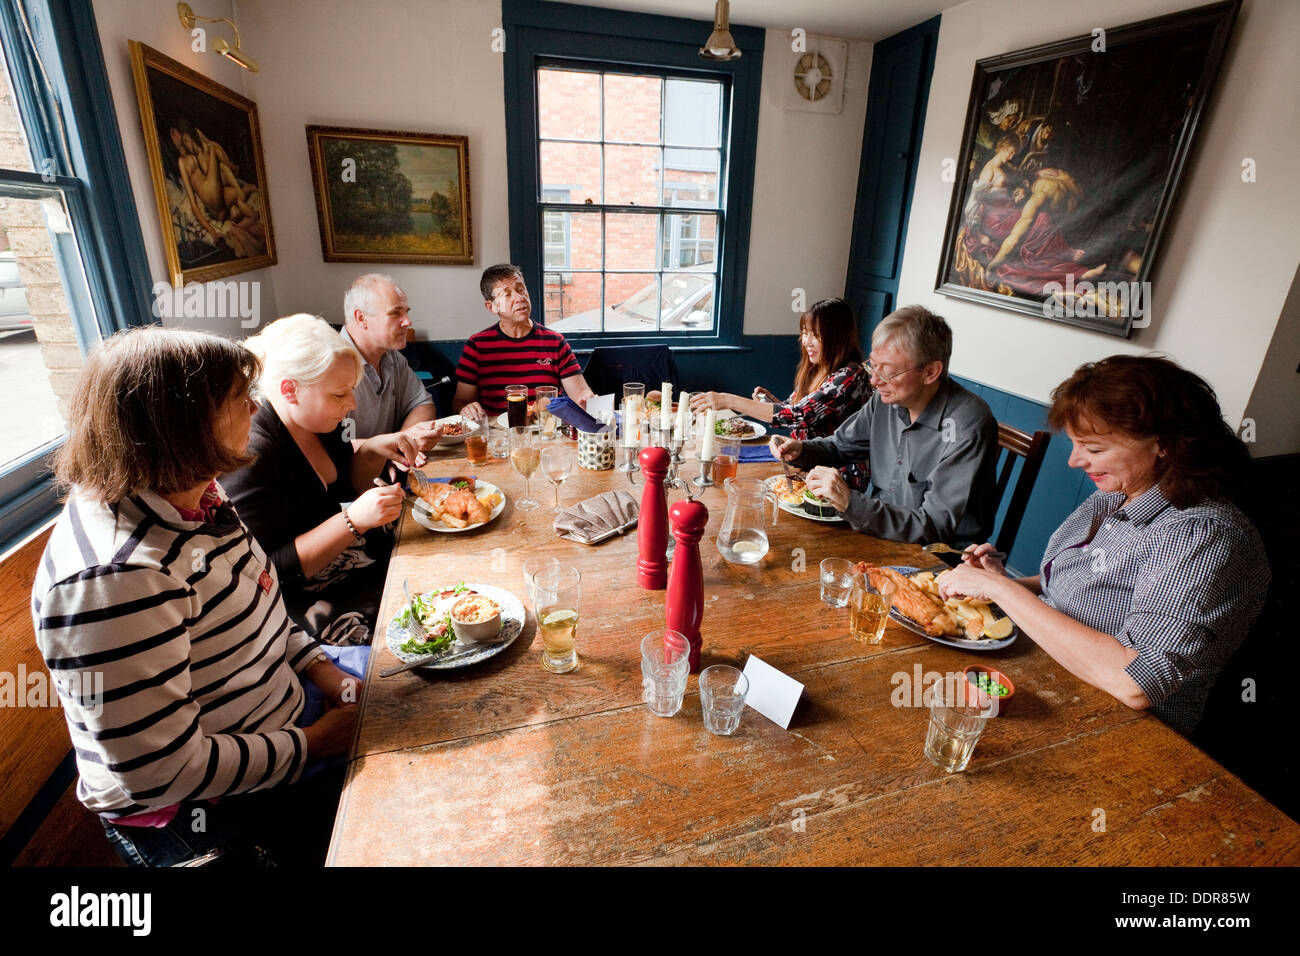 Un groupe de personnes mangeant un repas dans un pub, le parieur Pub Inn, South St, Oxford, Oxfordshire, UK Banque D'Images